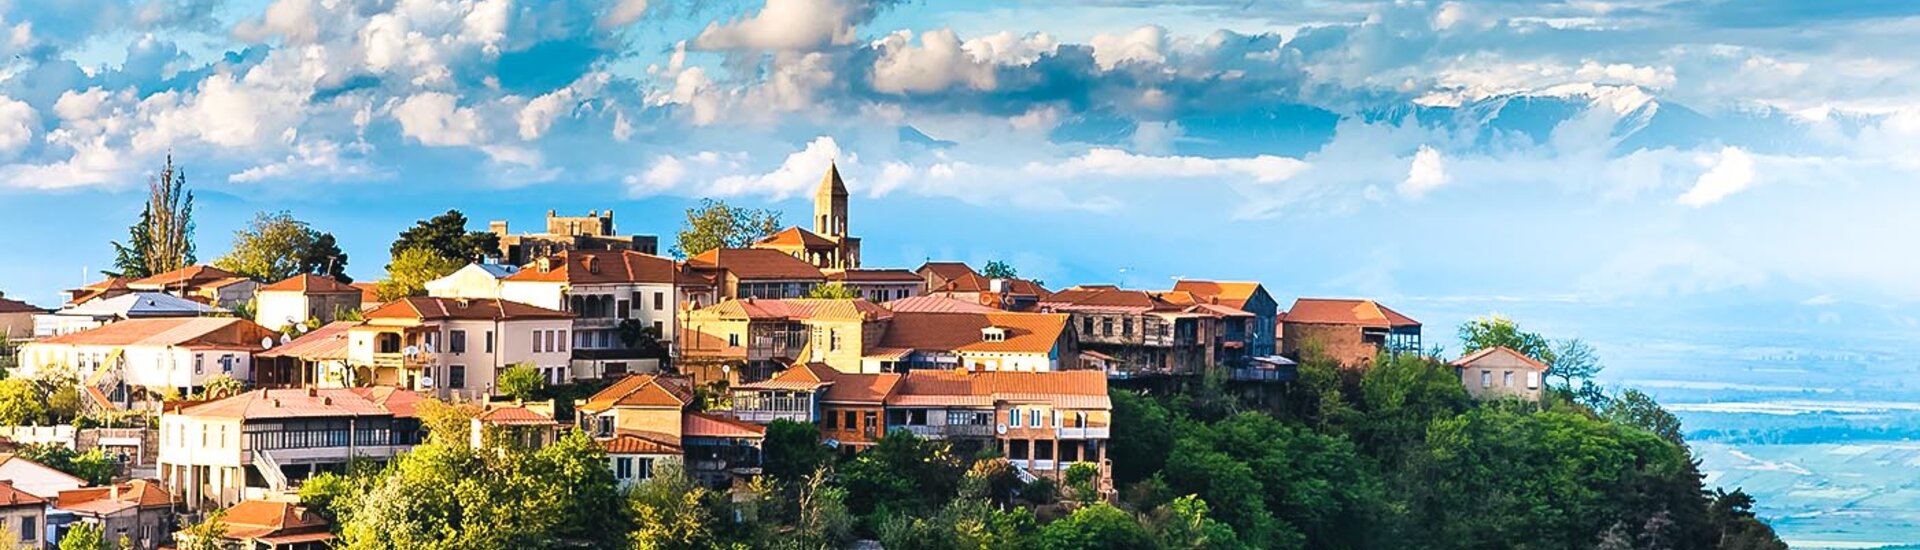 Blick auf die Stadt Sighnaghi in Georgien